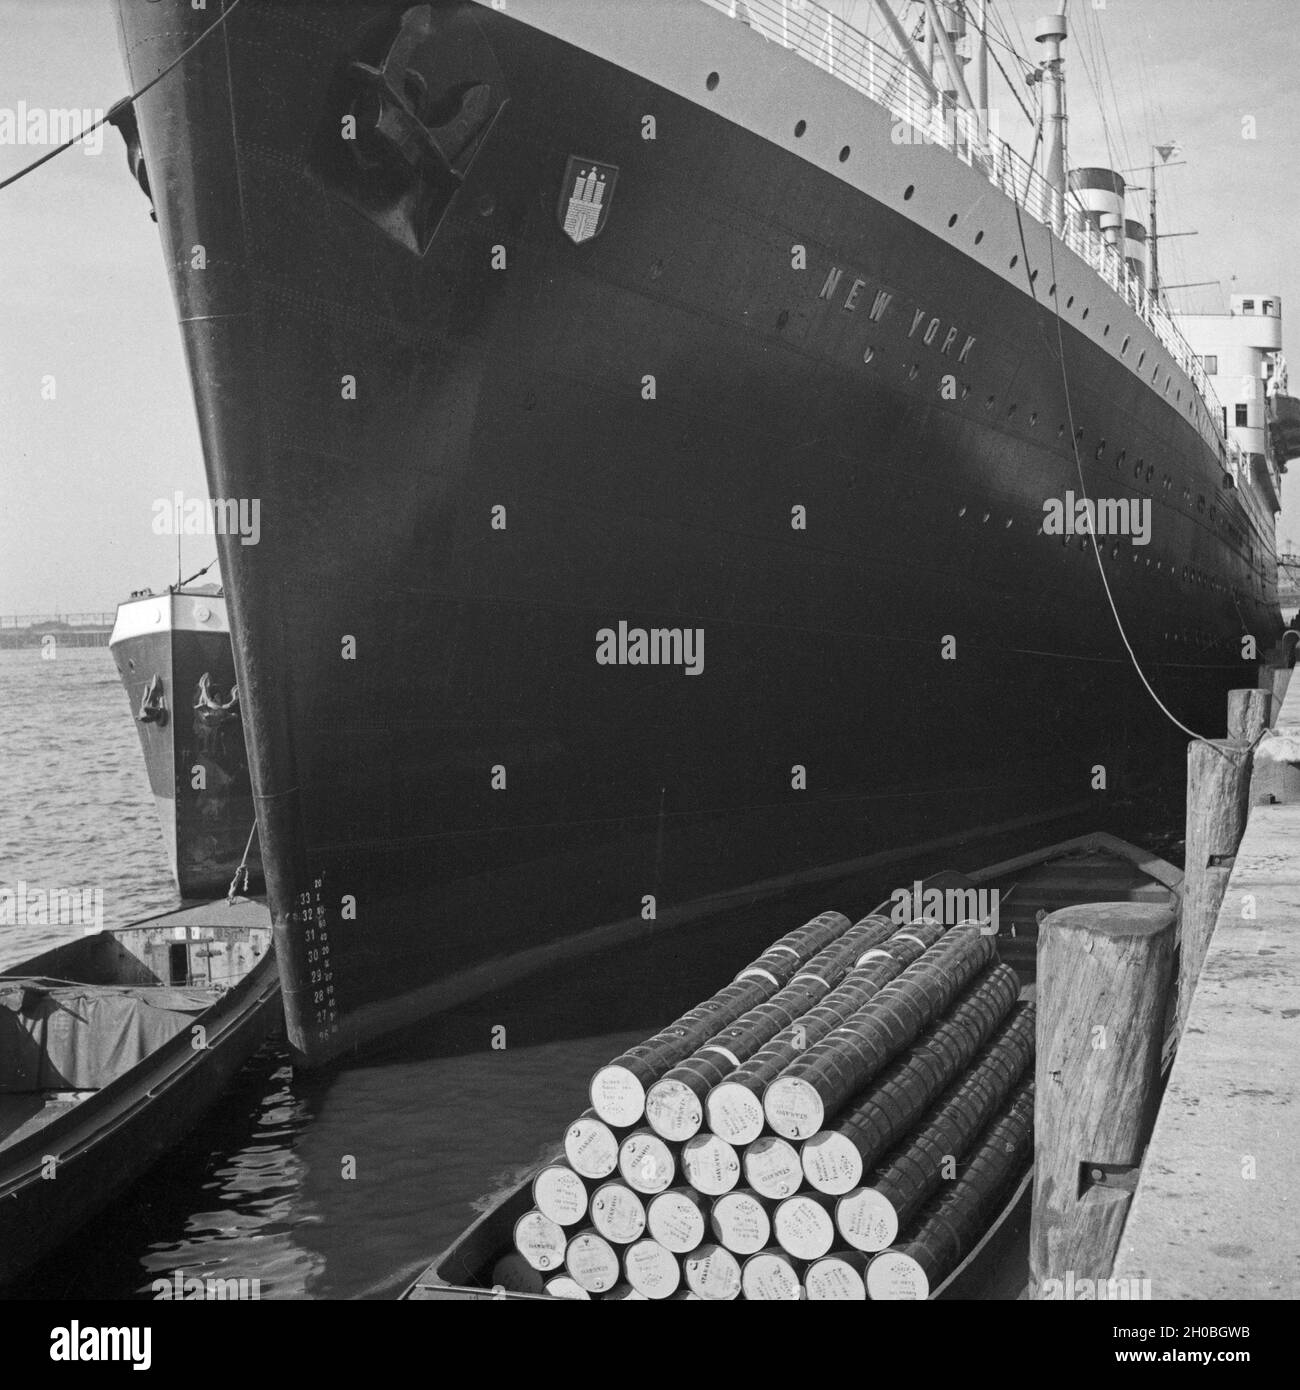 Das Schiff 'New York' der HAPAG im Hafen von Hamburg, Deutschland 1930er Jahre. Steam ship 'New York' of HAPAG company at Hamburg harbor, Germany 1930s. Stock Photo